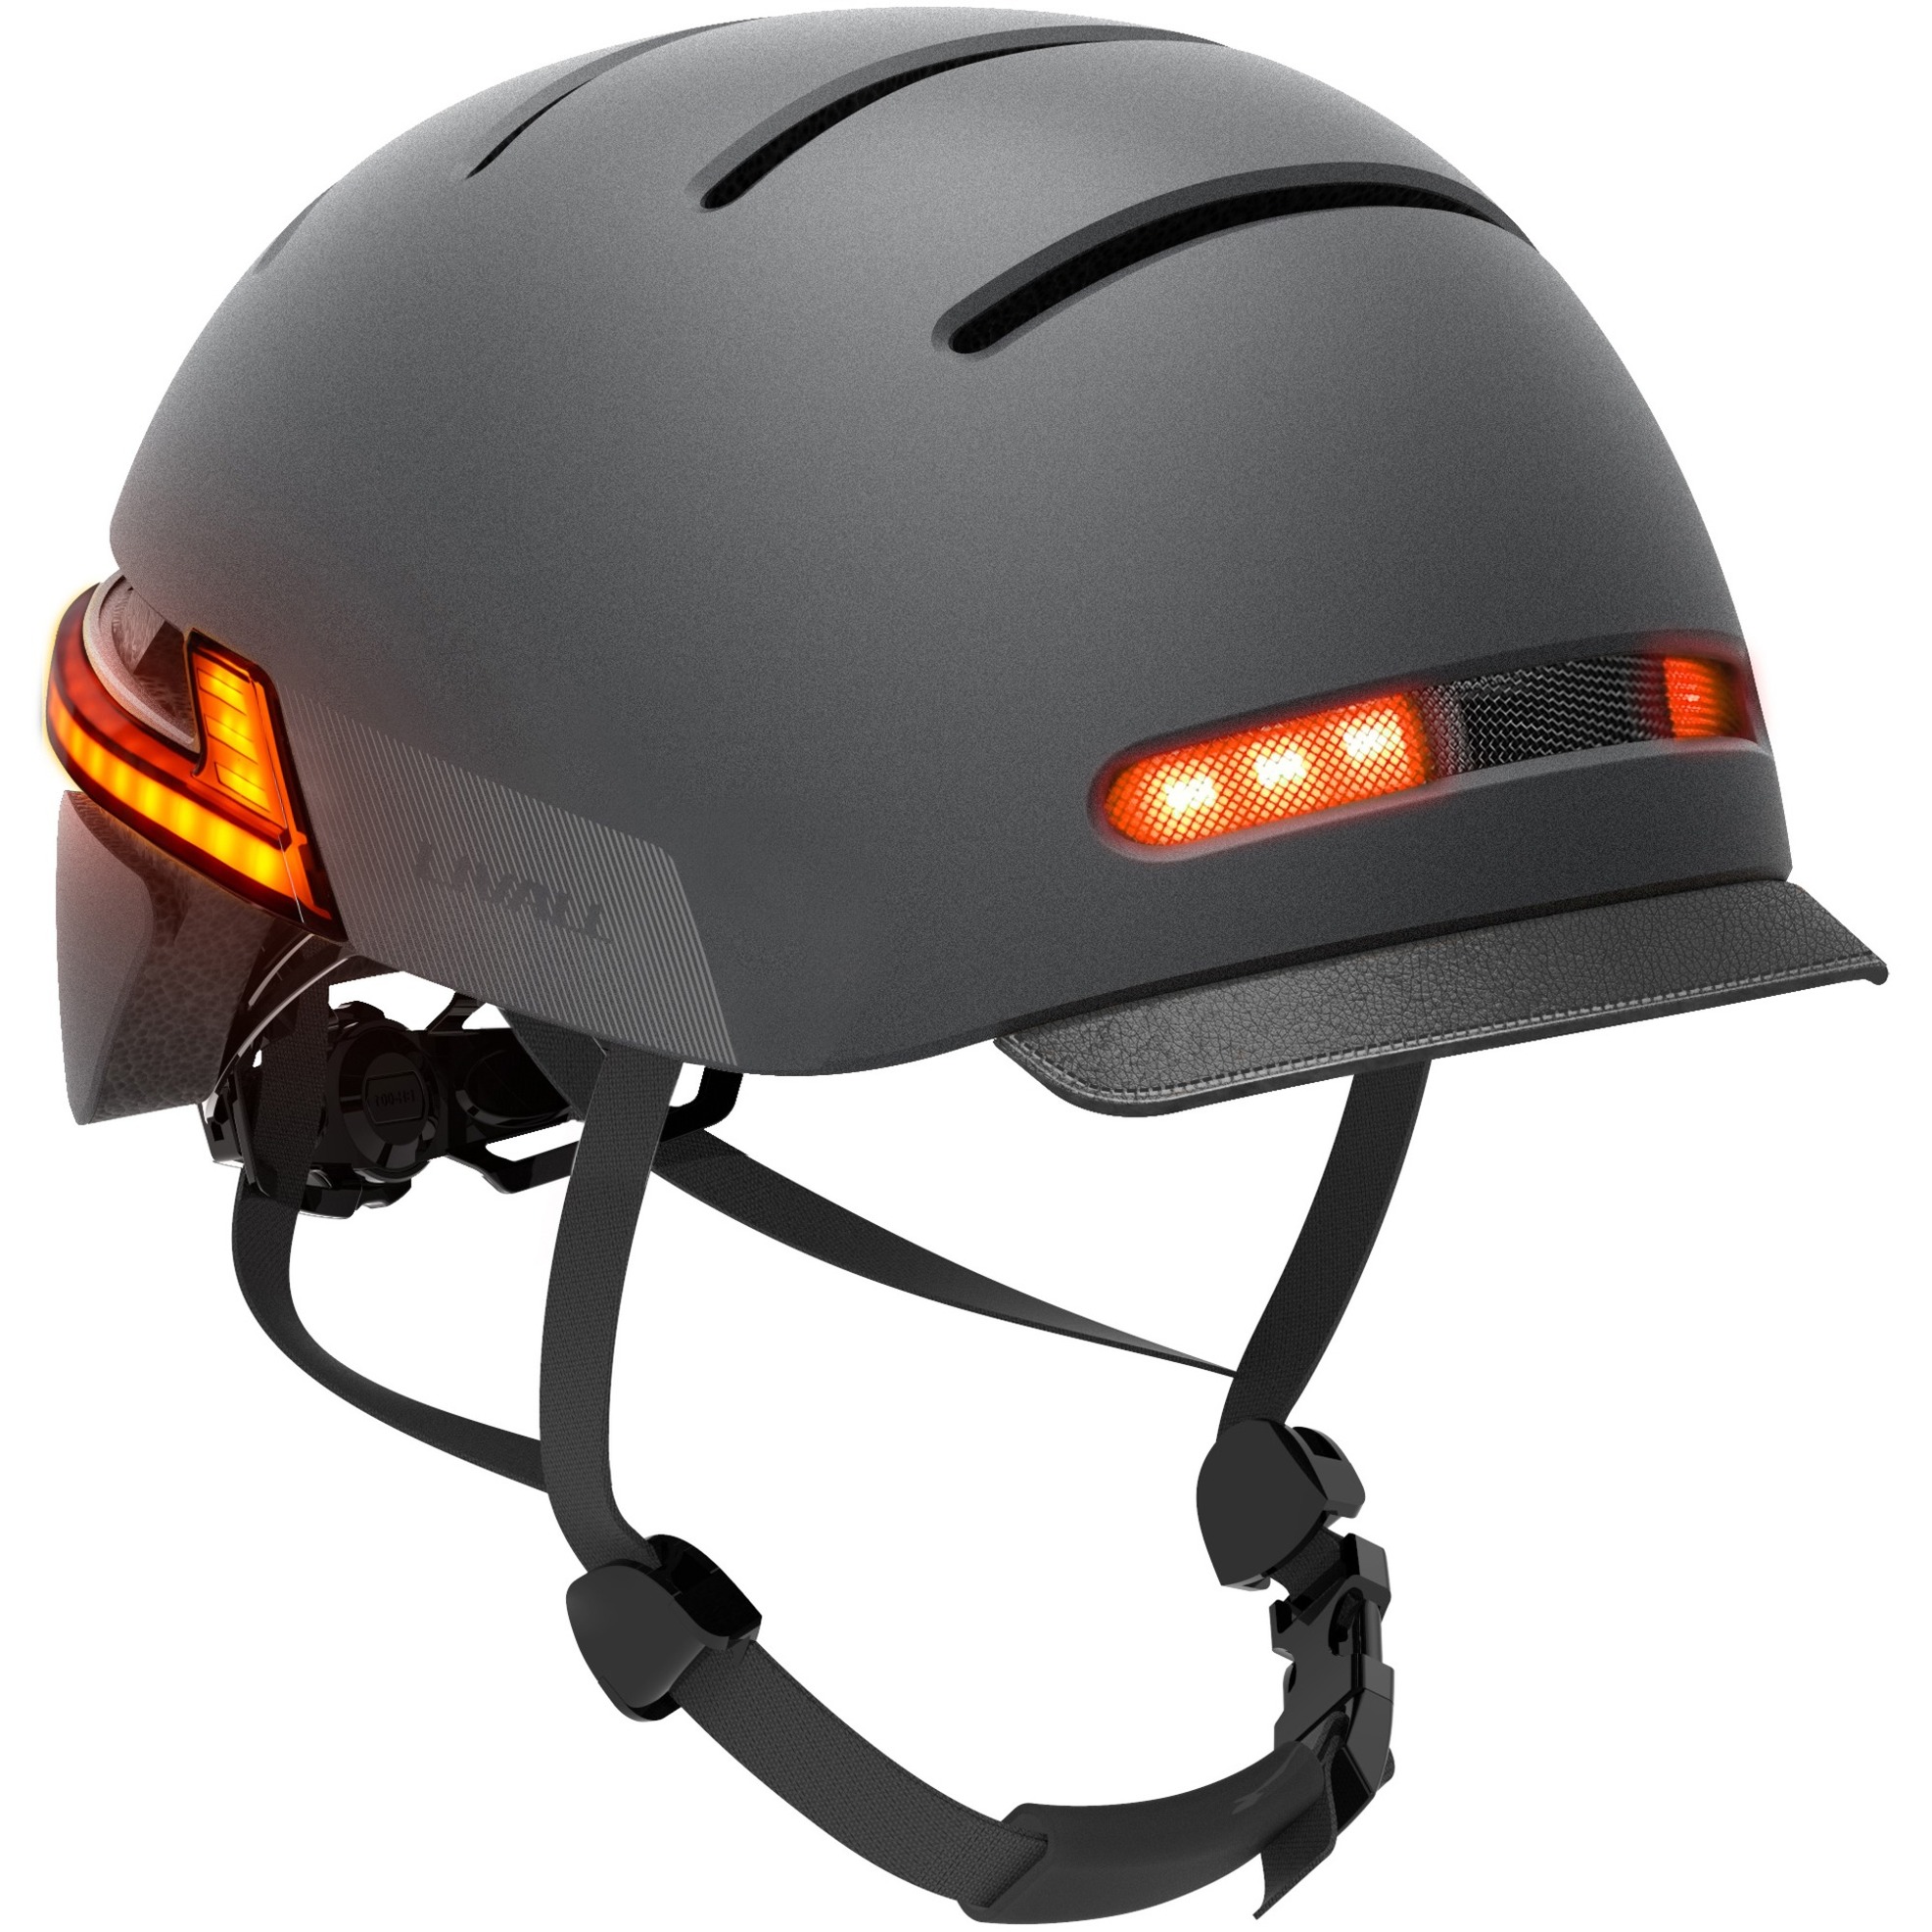 Image of Alternate - BH51 T Neo, Helm online einkaufen bei Alternate